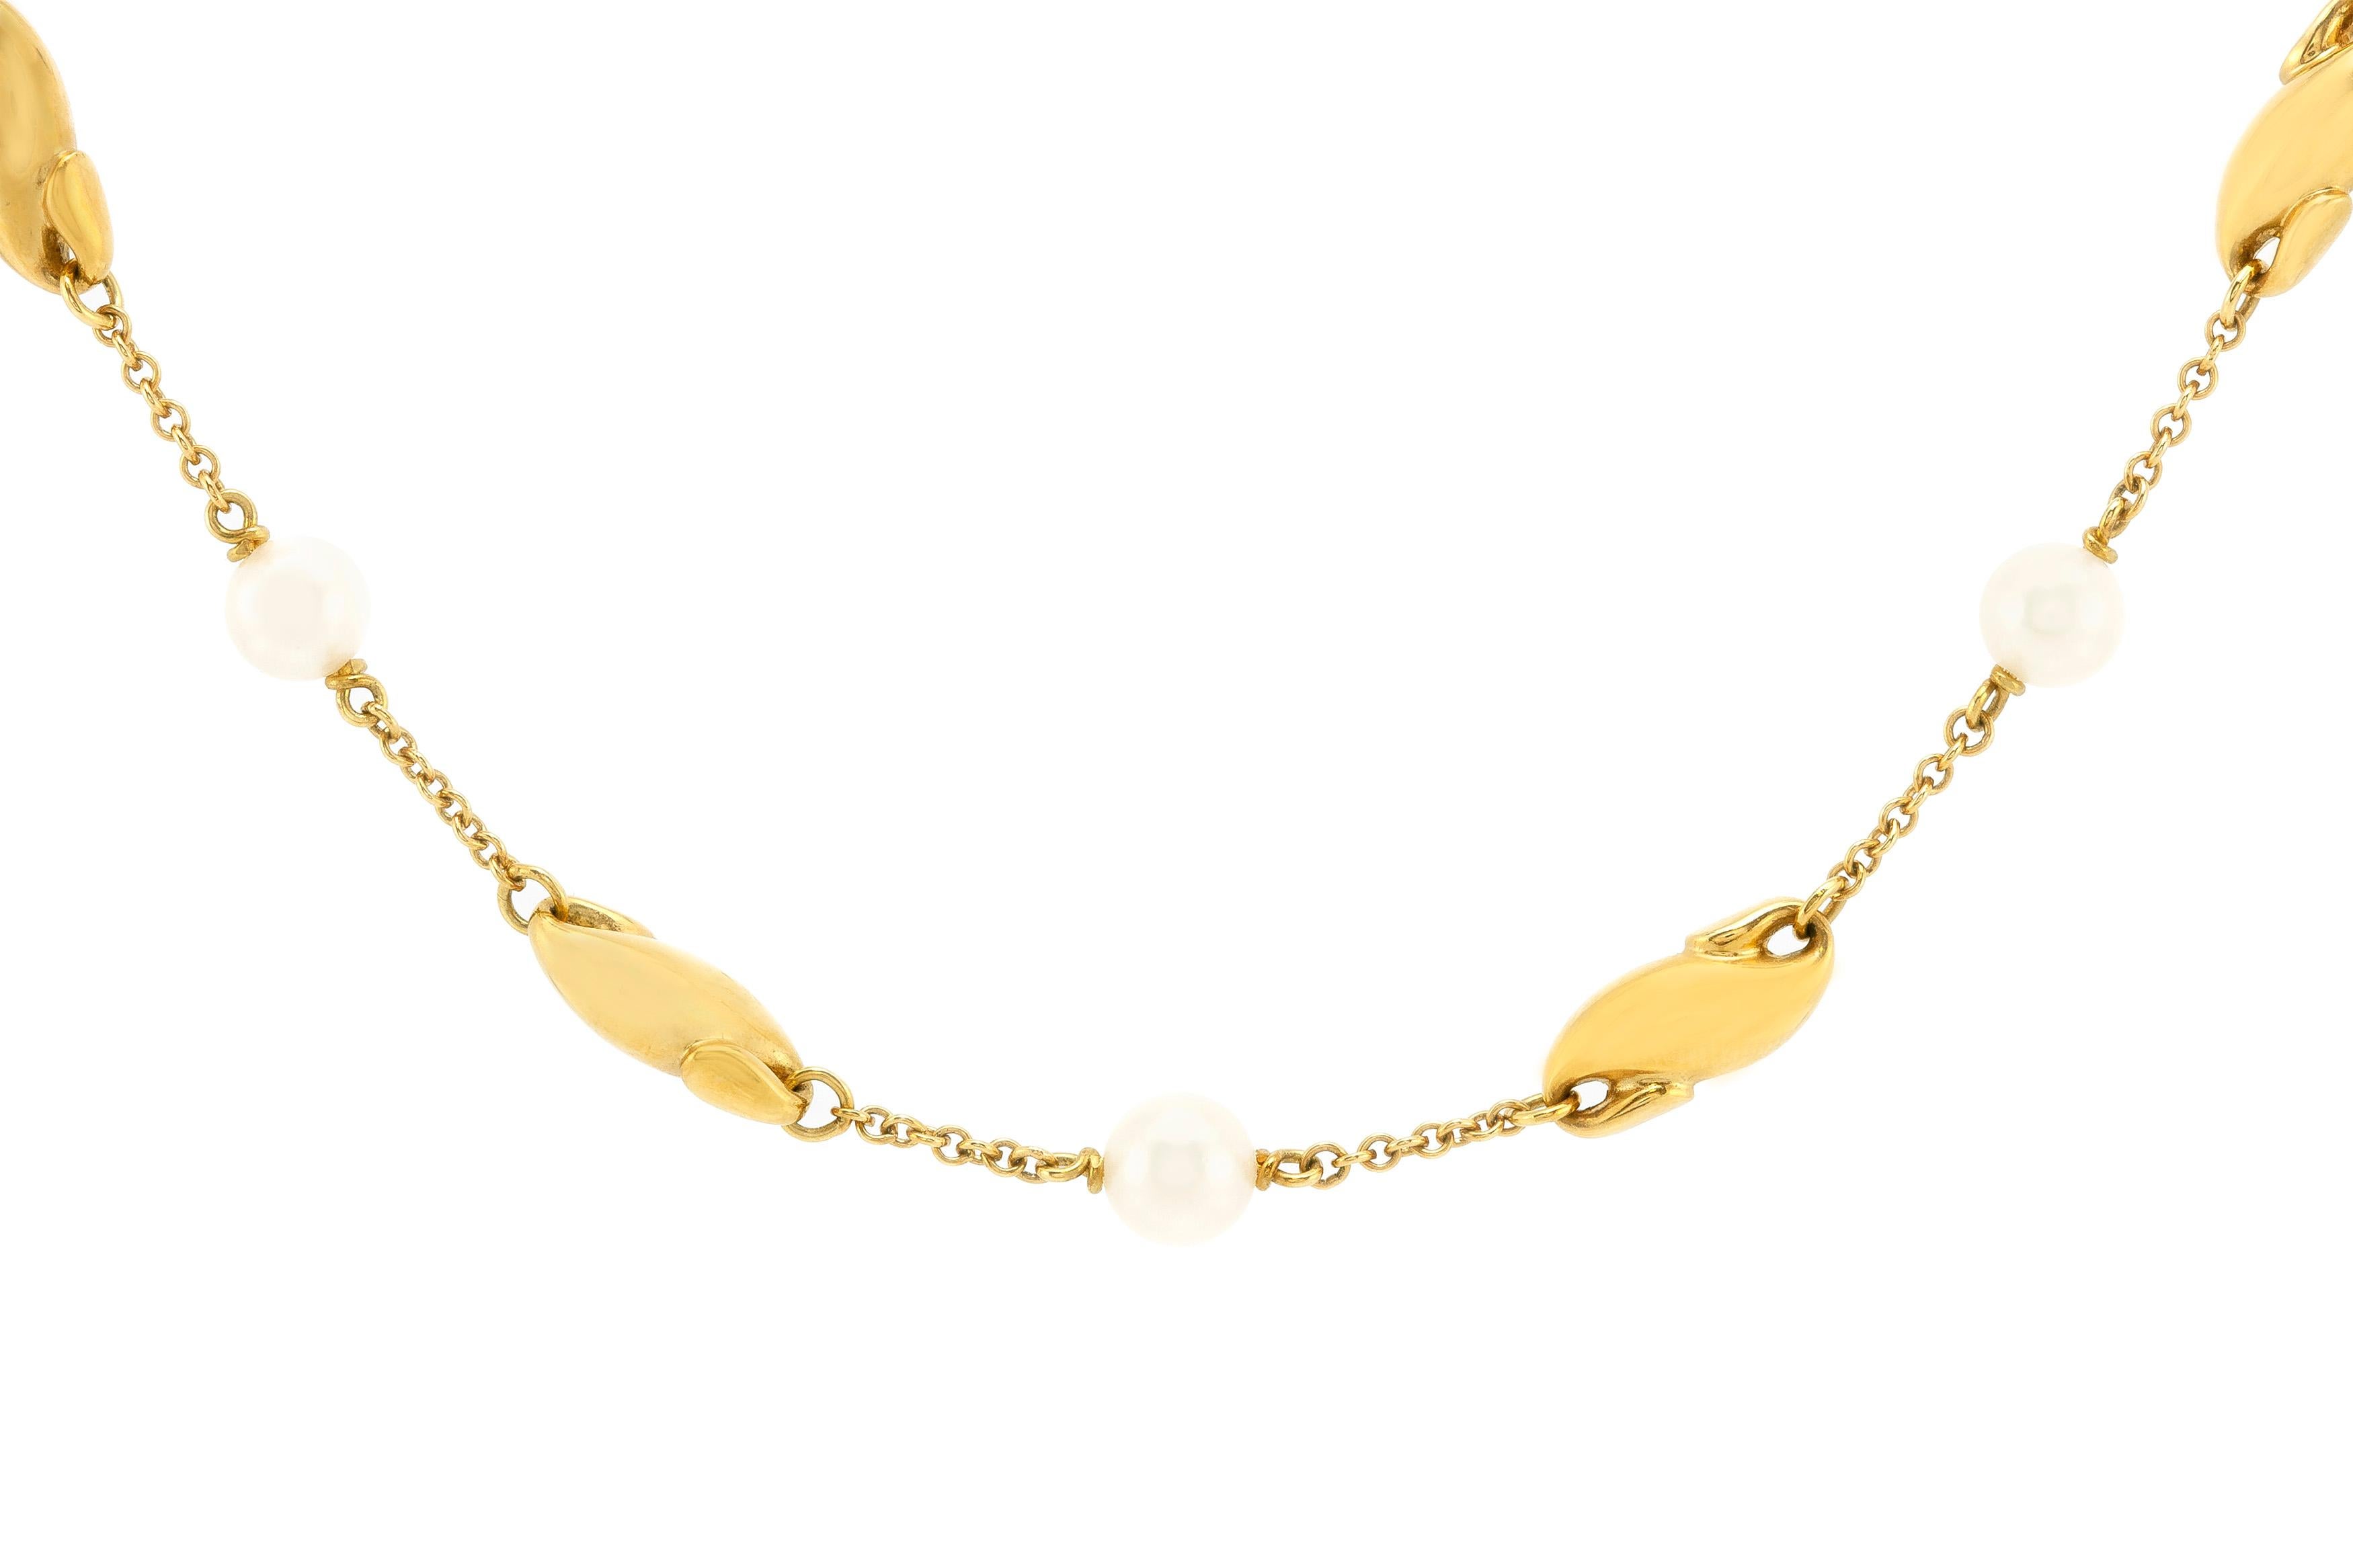 Tiffany Halskette ist fein in 18K Gold mit Perlen gefertigt